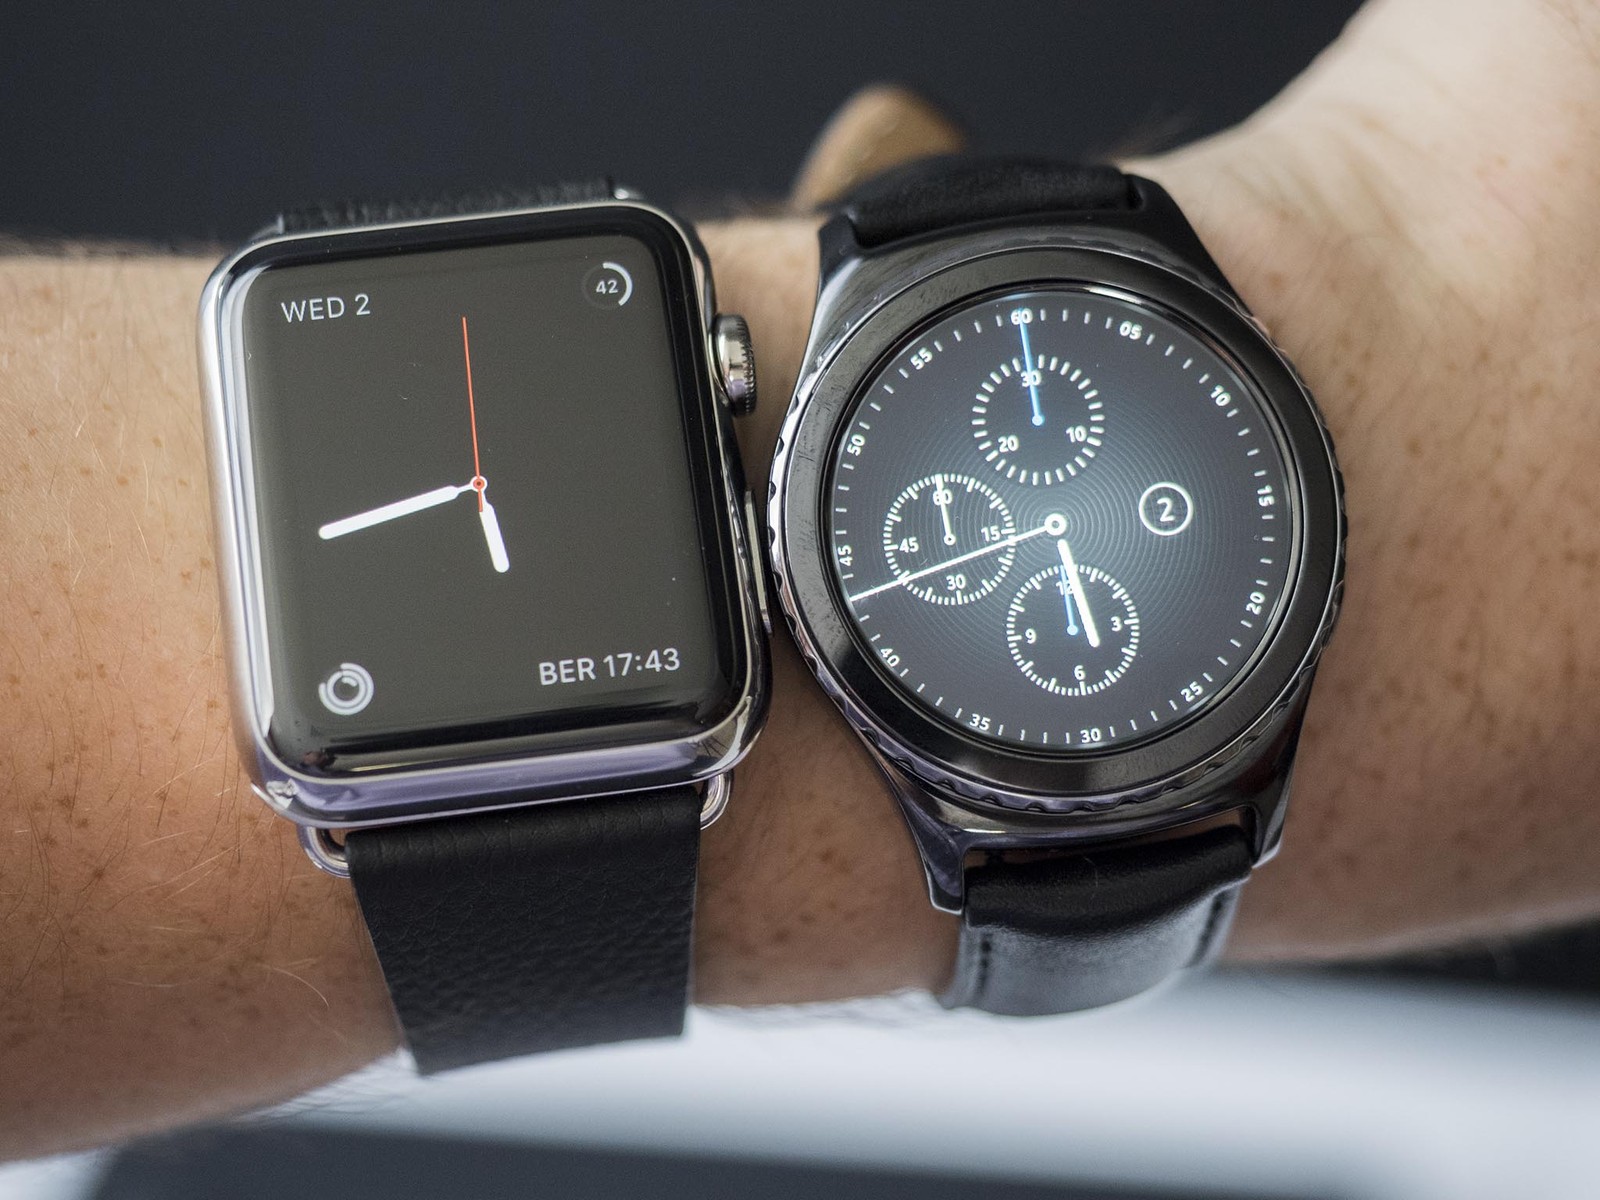 samsung-gear-s-2-vs-apple-watch-wrist.jpg